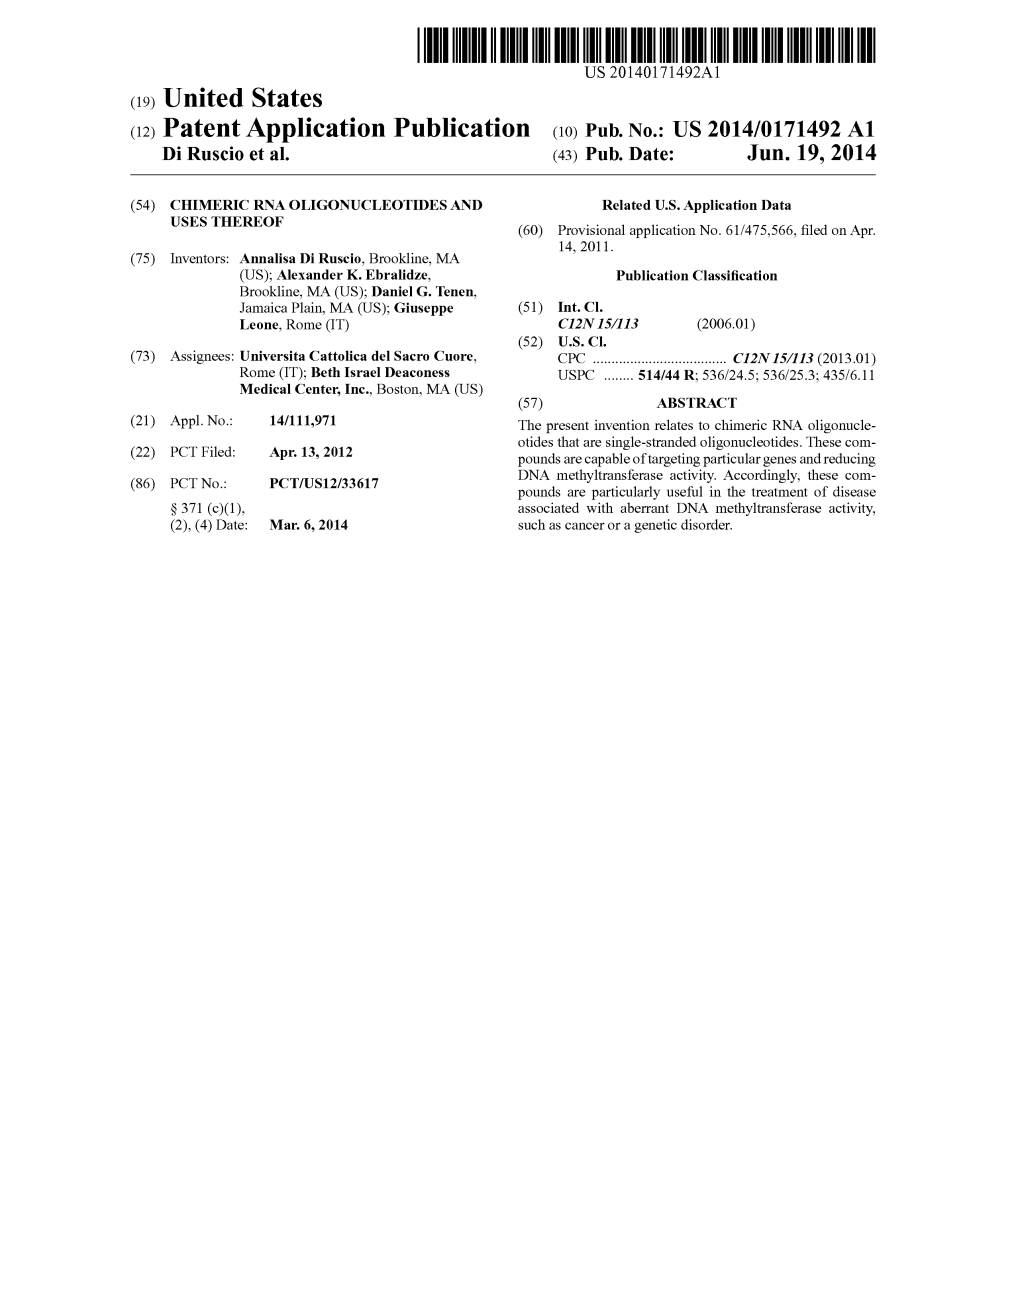 (12) Patent Application Publication (10) Pub. No.: US 2014/0171492 A1 Di Ruscio Et Al